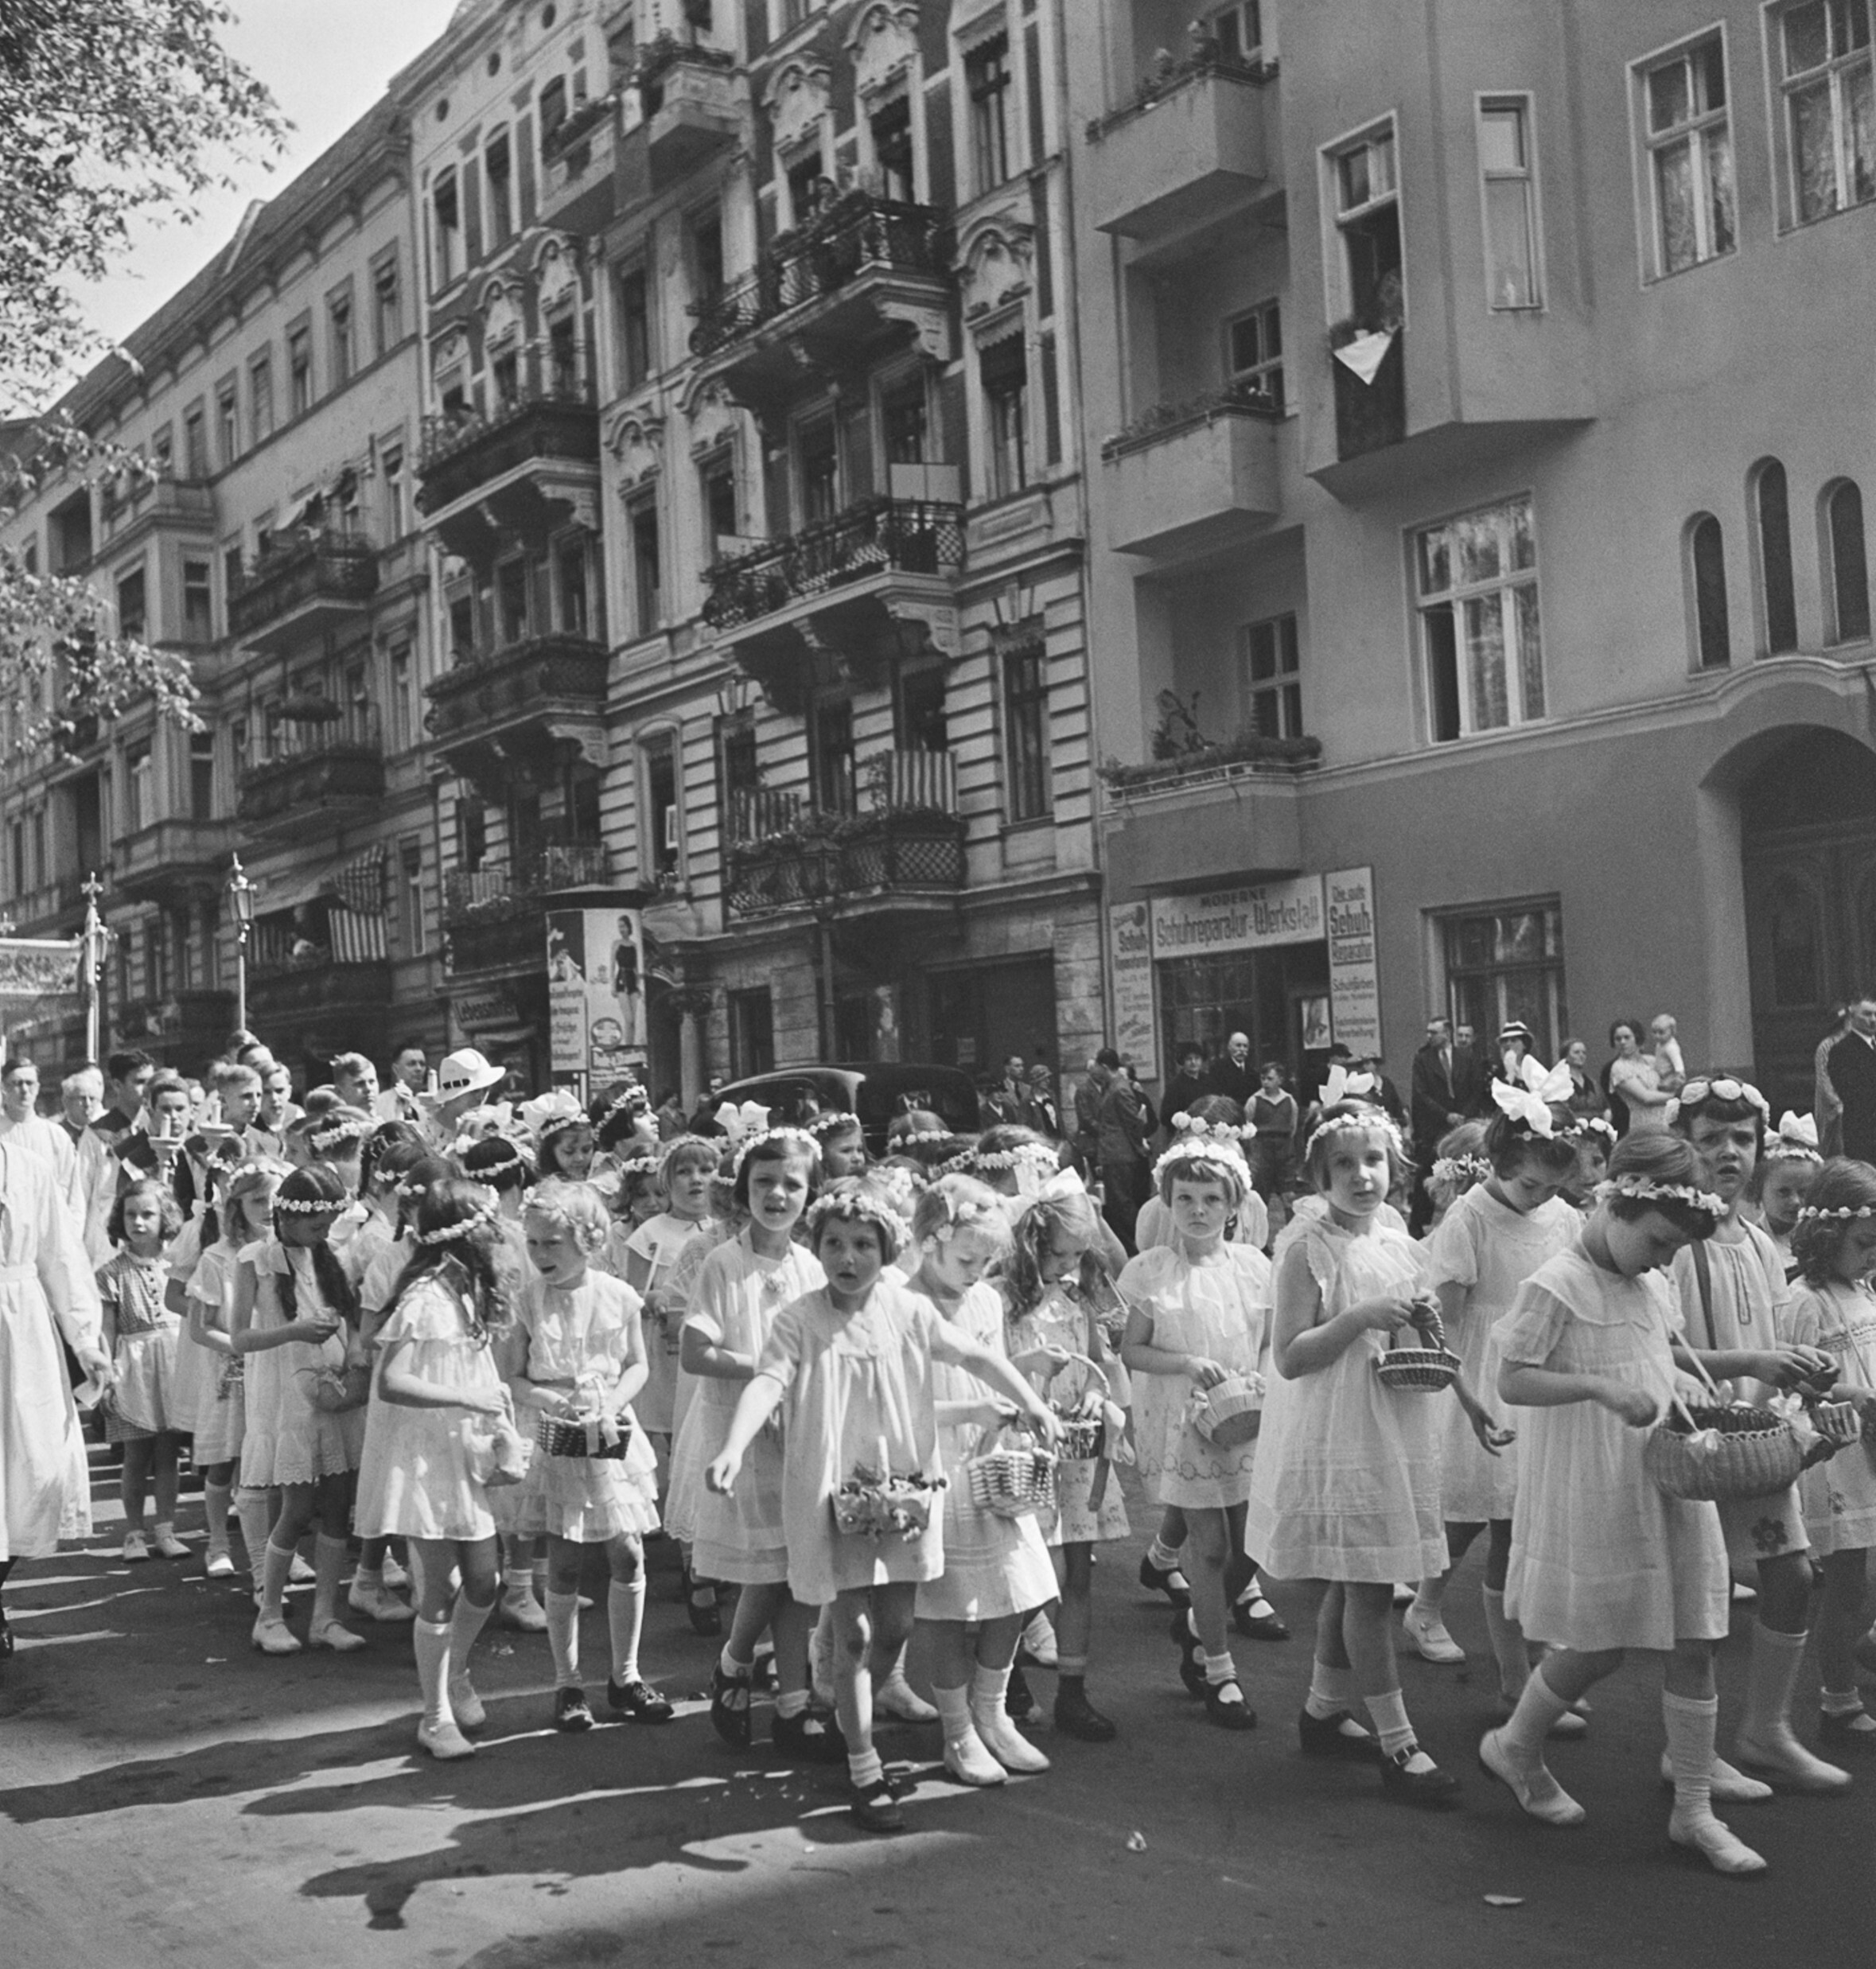 Девушки, участвующие в процессии Корпус-Кристи, Вена или Берлин, 1930-е годы. Фотограф Роман Вишняк